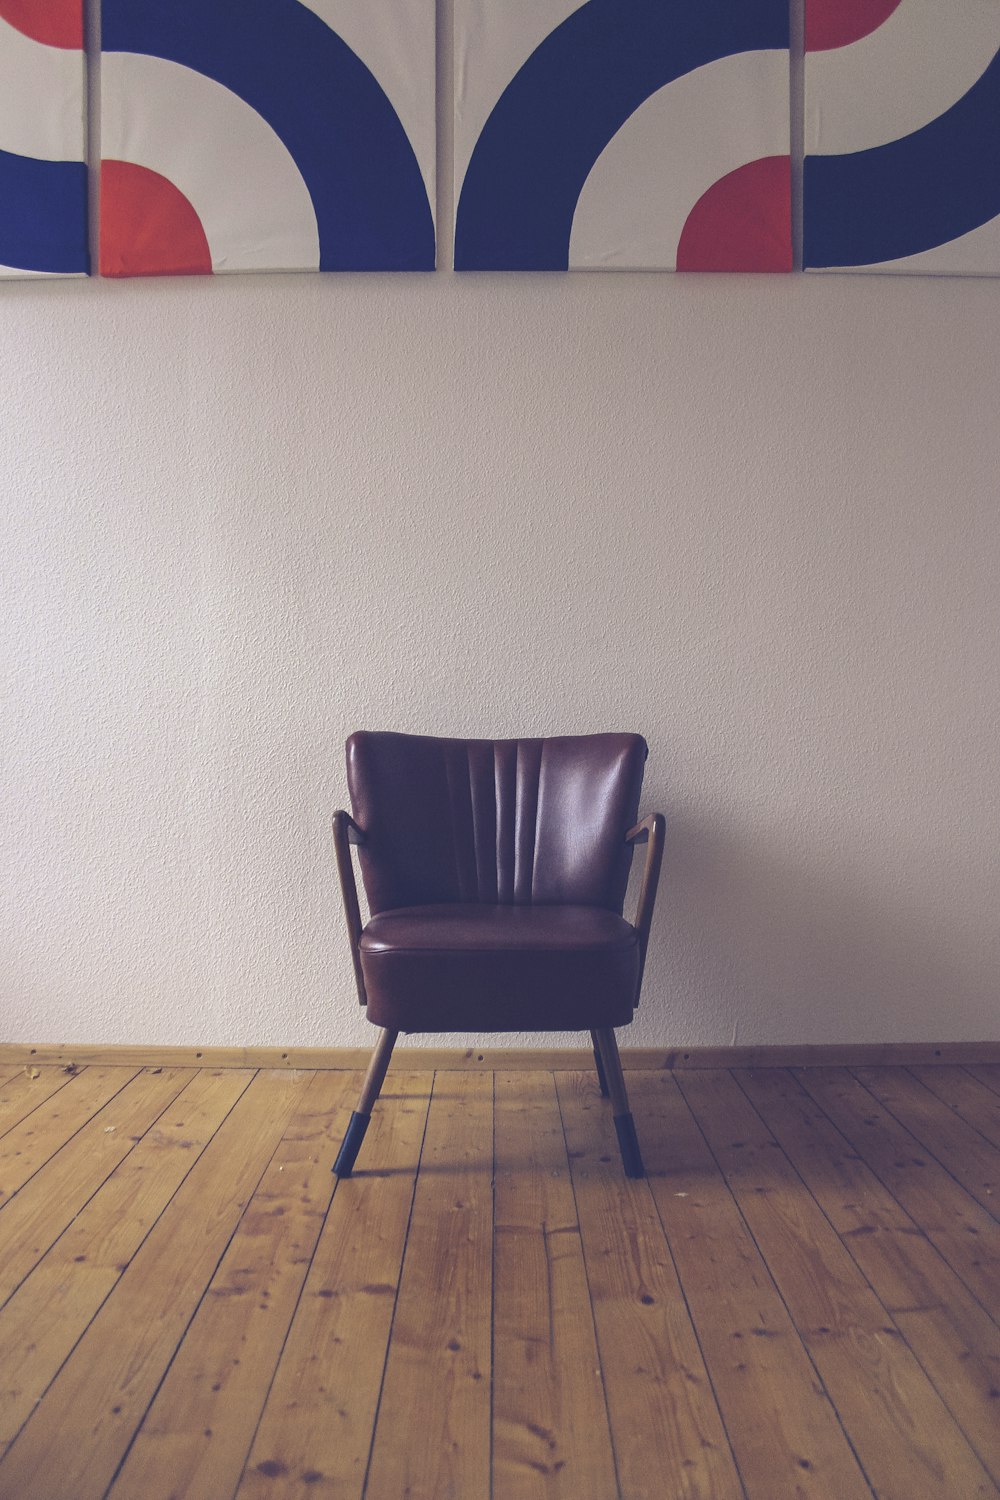 壁近くの茶色の革張りの椅子